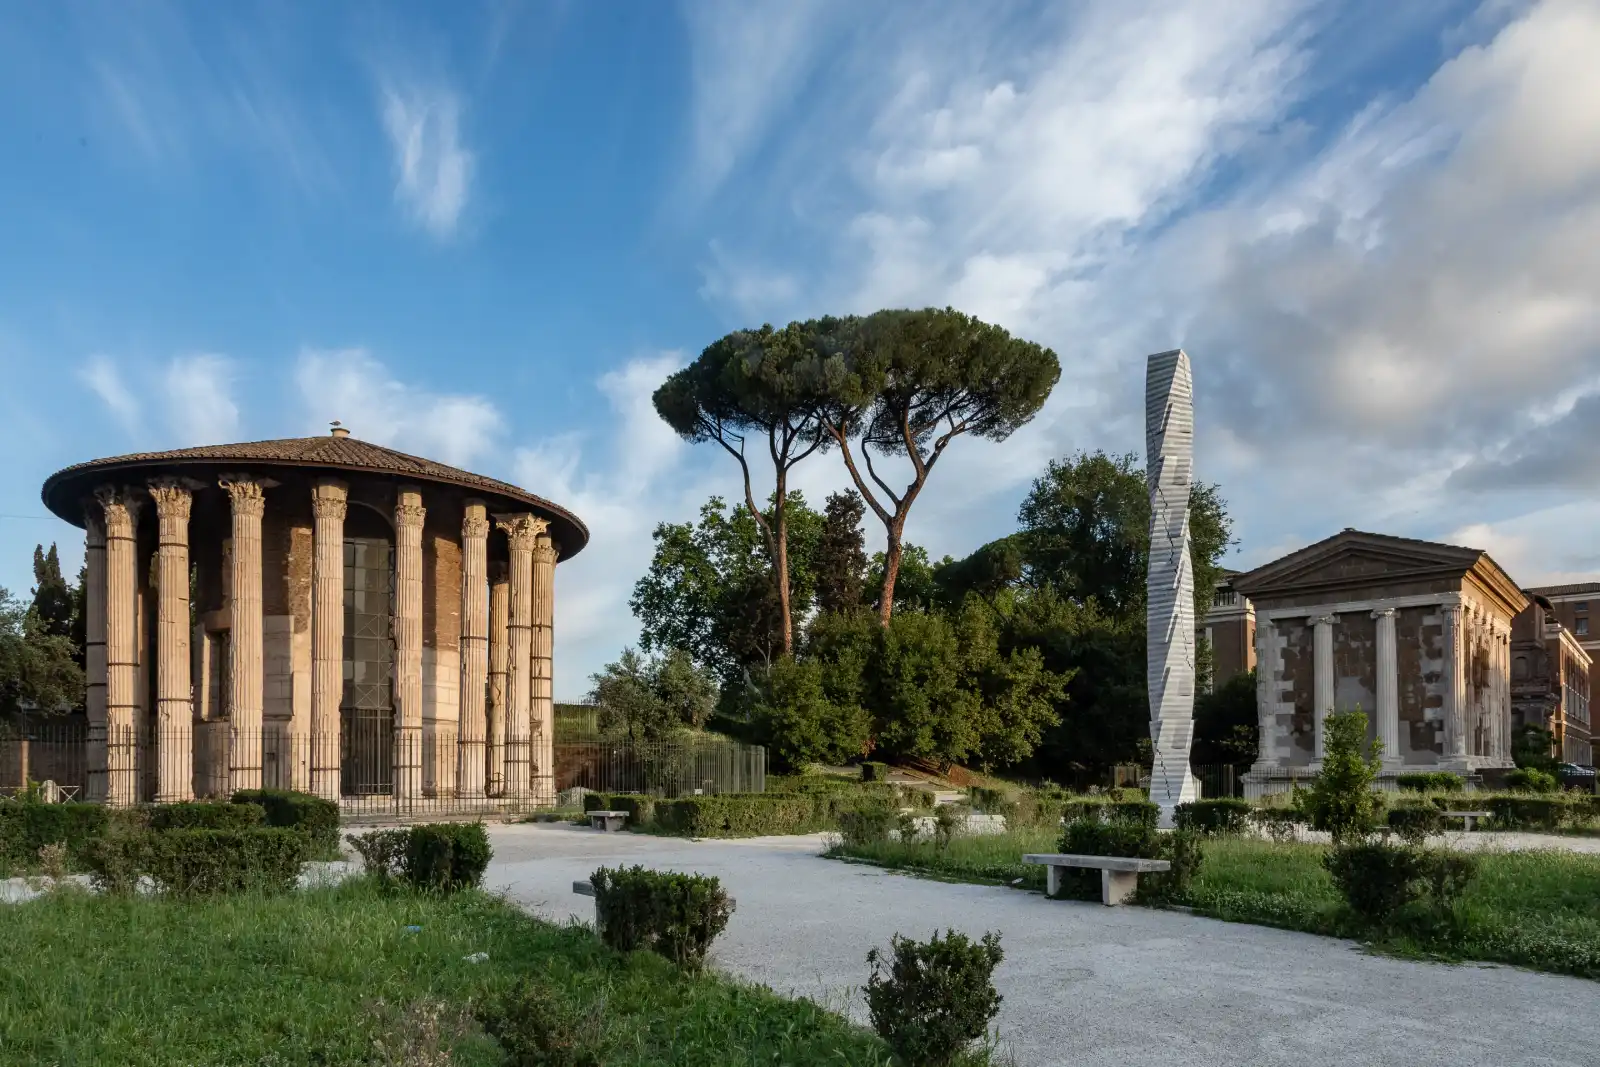 Colonna installata dall'artista Park Eun Sun al Tempio di Vesta a Roma per la mostra Colonne Infinite